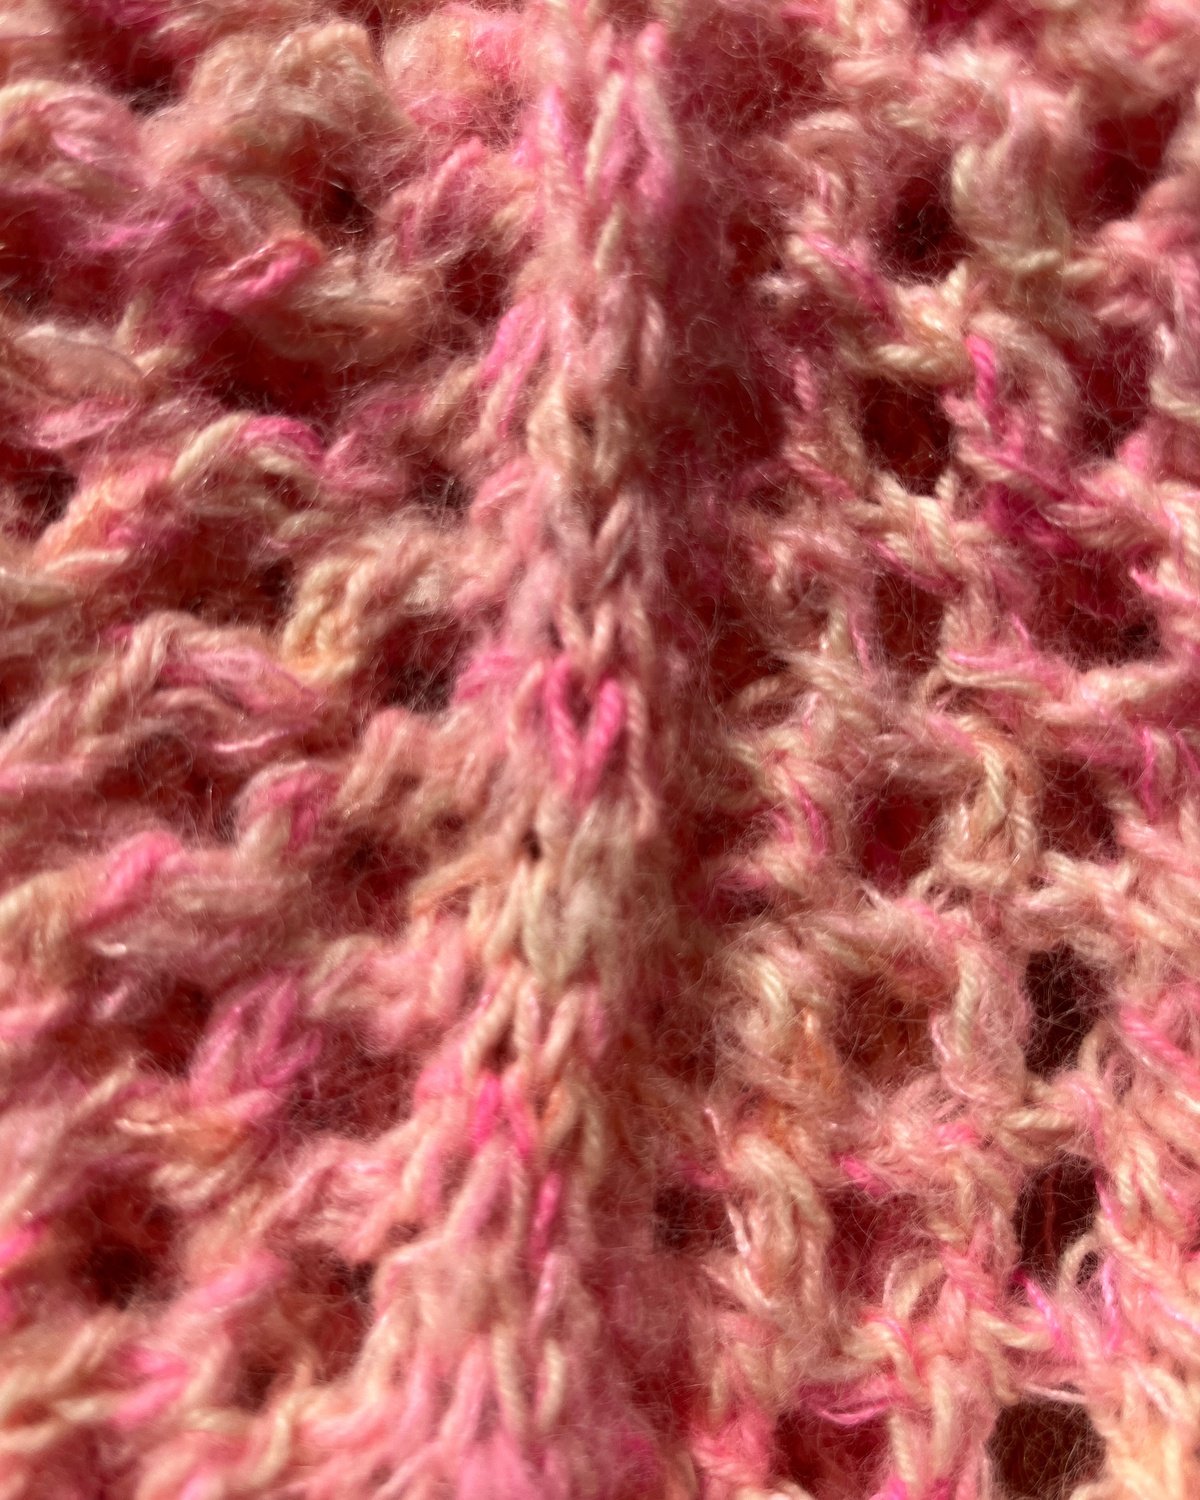 Kokomo Sleeves English Popknit knitting pattern